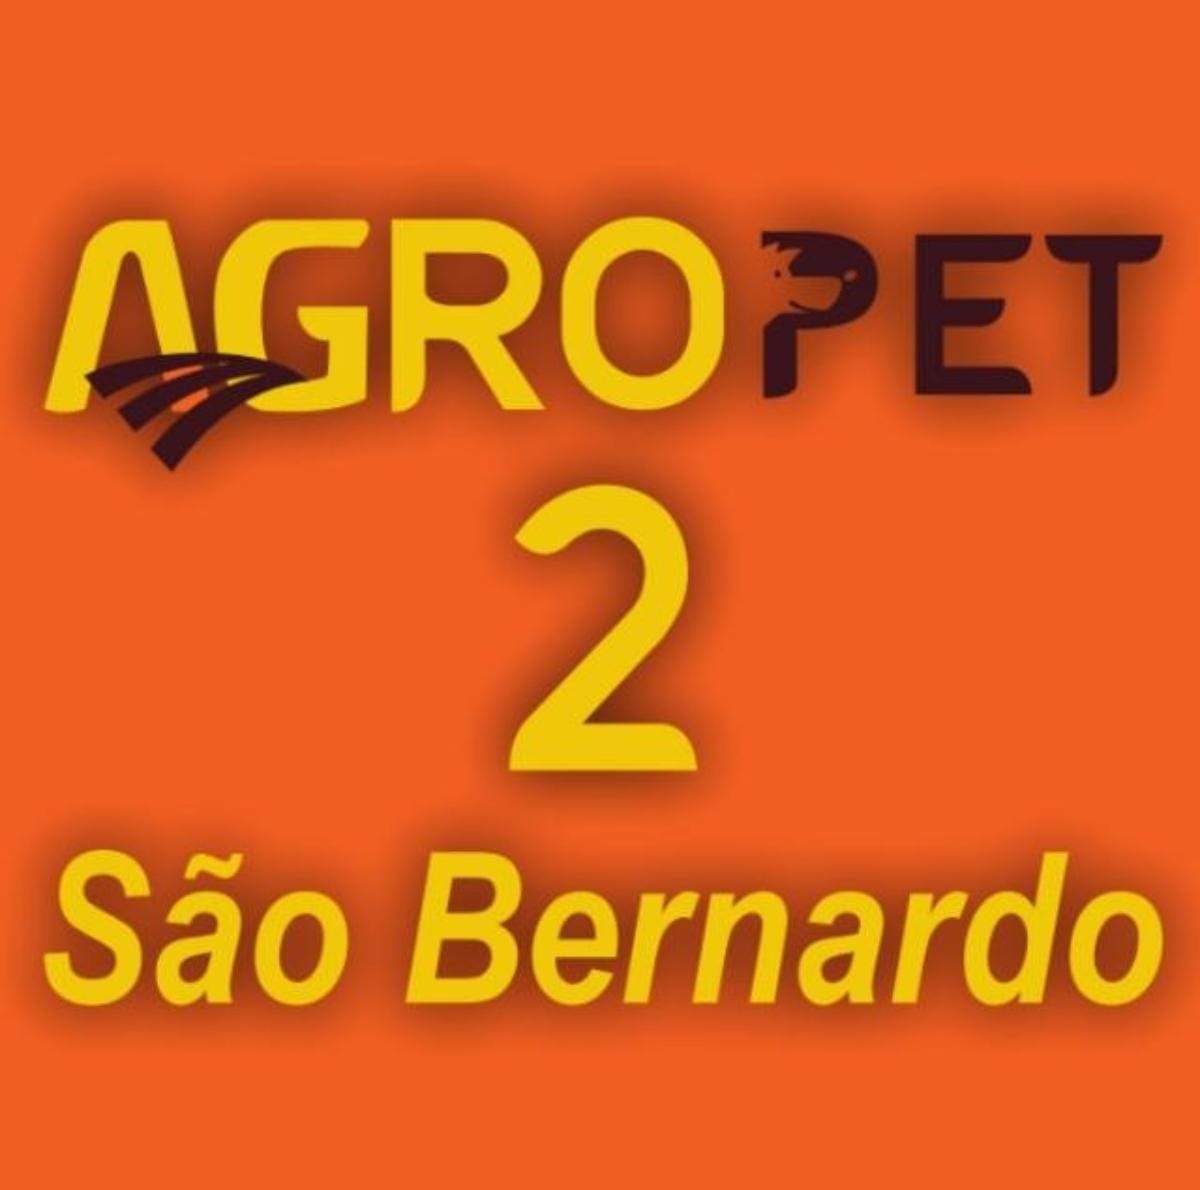 Logotipo Agropet 2 São Bernardo